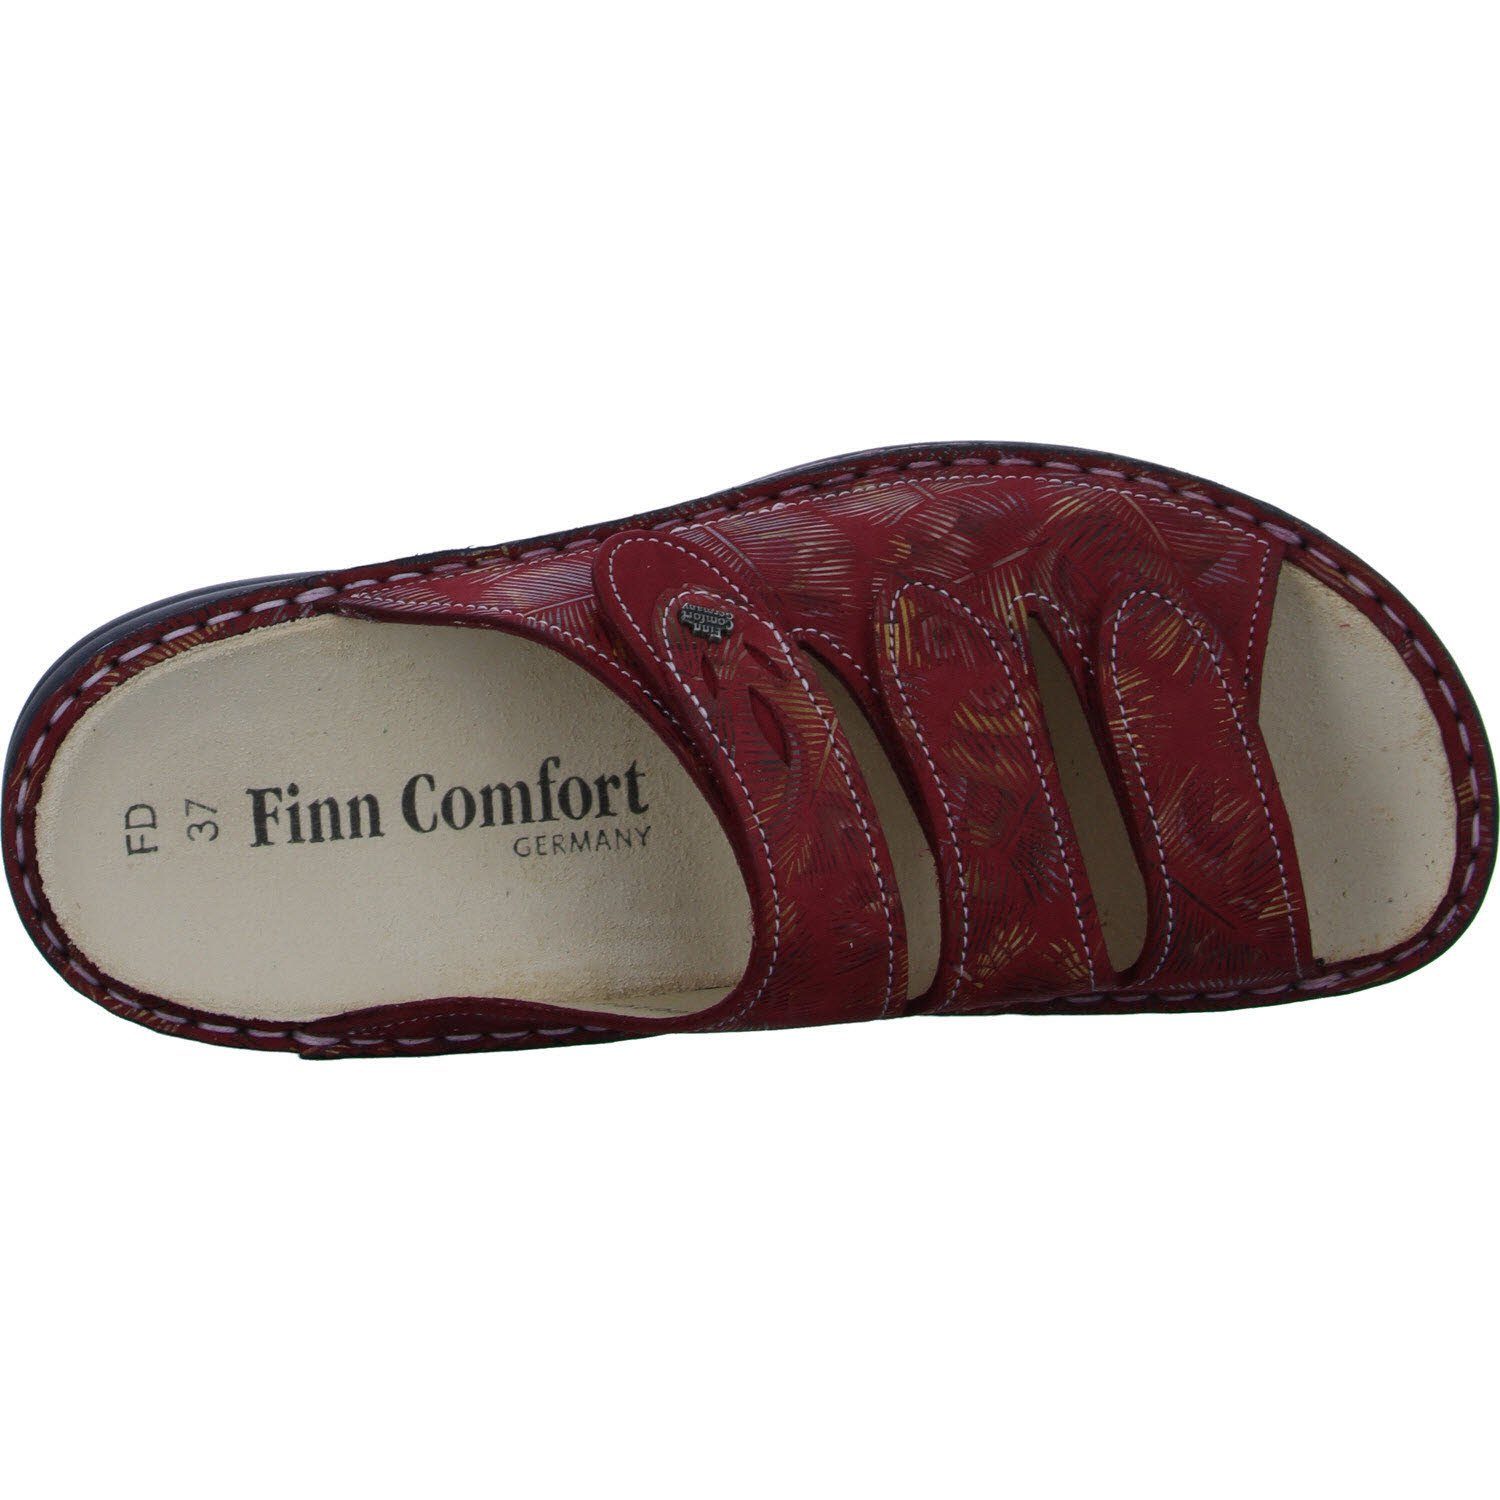 Pantolette Comfort KOS Finn